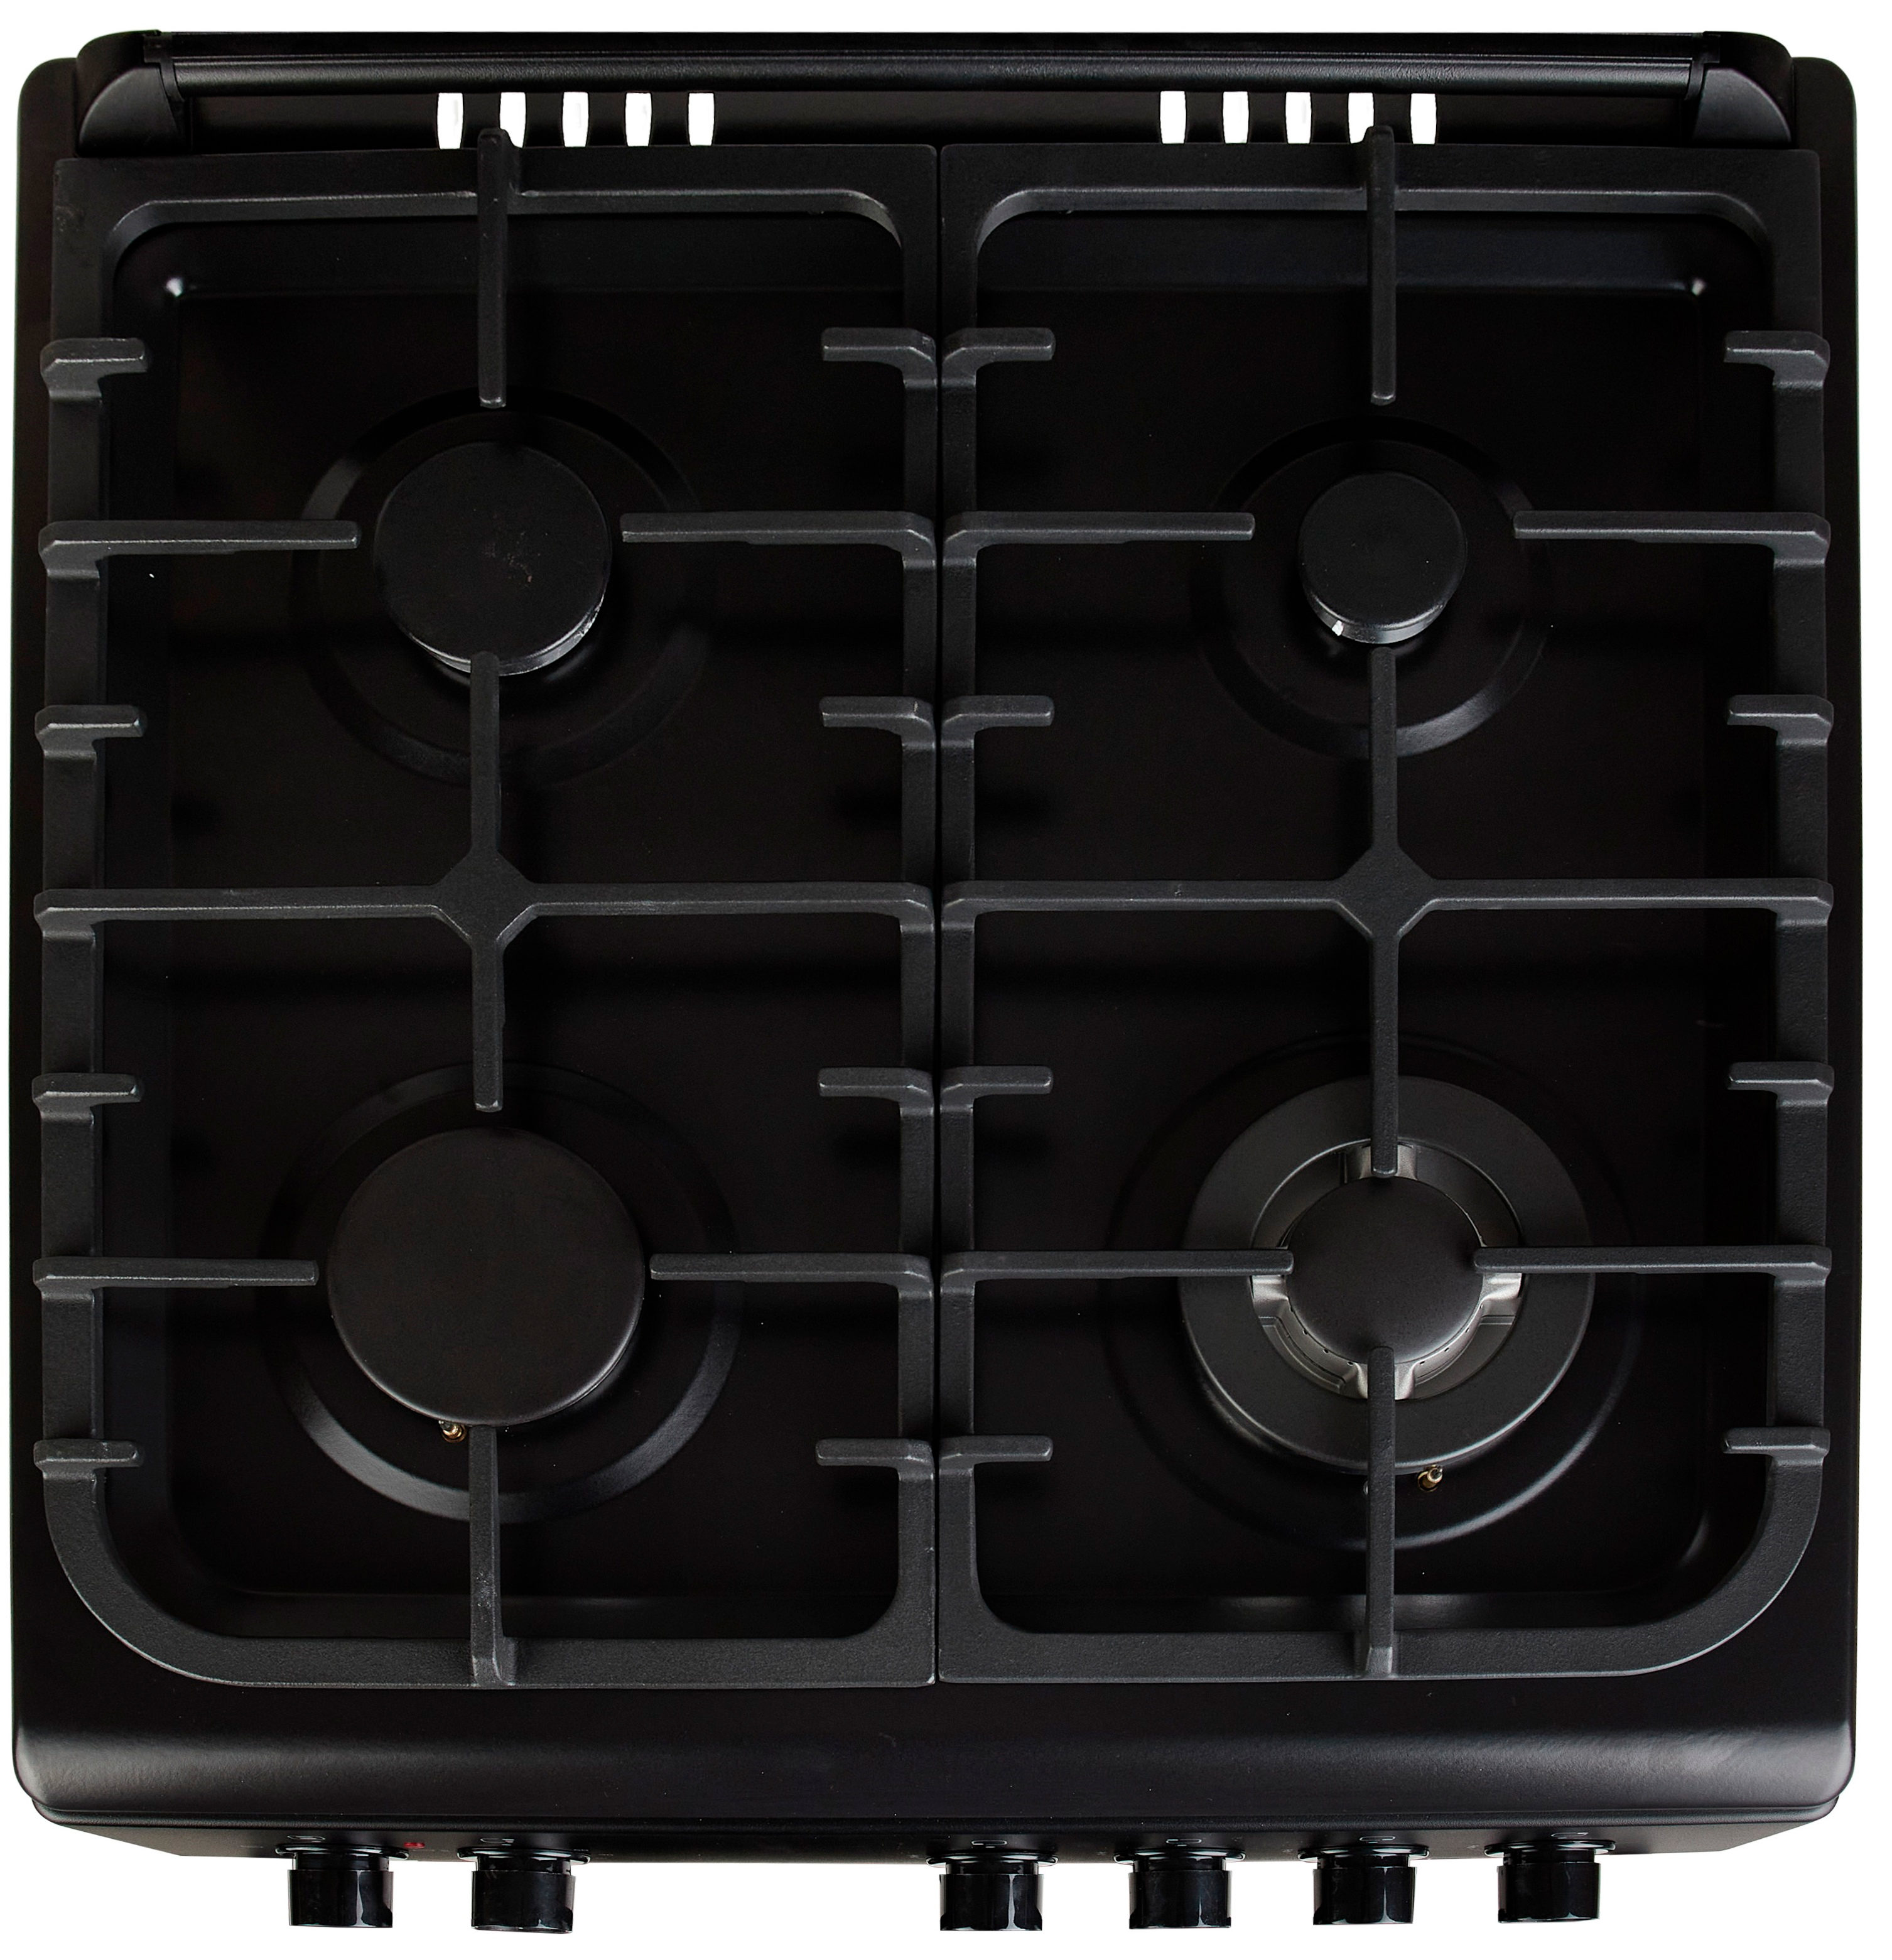 Кухонная плита Fiesta C 6403 SADVсG-BL инструкция - изображение 6